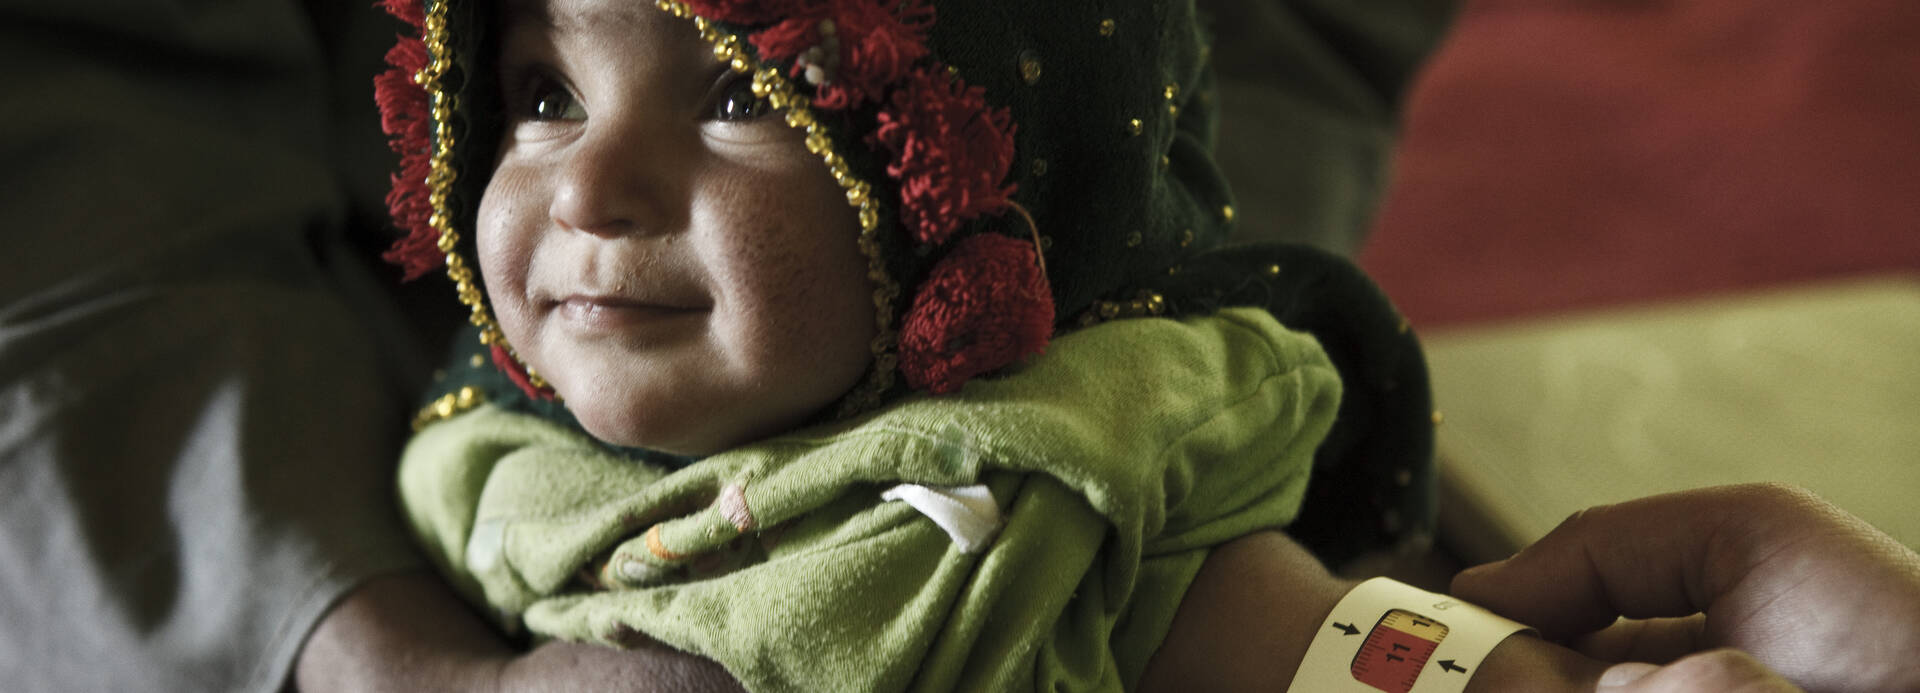 Ein mit Kapuze und dicker Kleidung eingepacktes Kleinkind, das MUAC-Band am Arm zeigt Mangelernährung